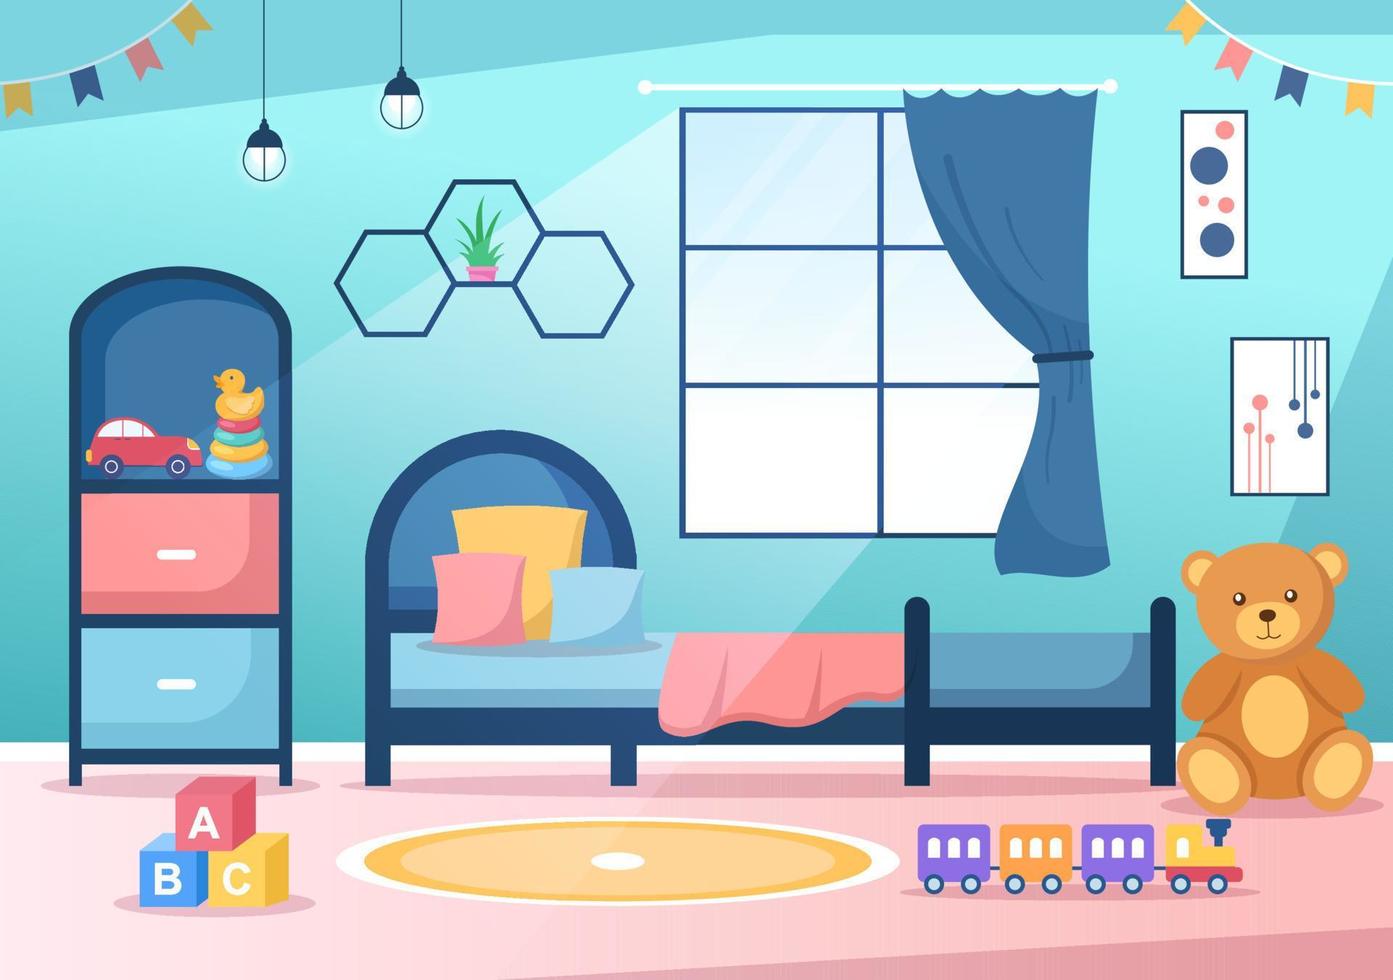 gezellige kinderkamer interieur met meubels zoals bed, speelgoed, kledingkast, nachtkastje, vaas, kroonluchter in moderne stijl in cartoon vectorillustratie vector